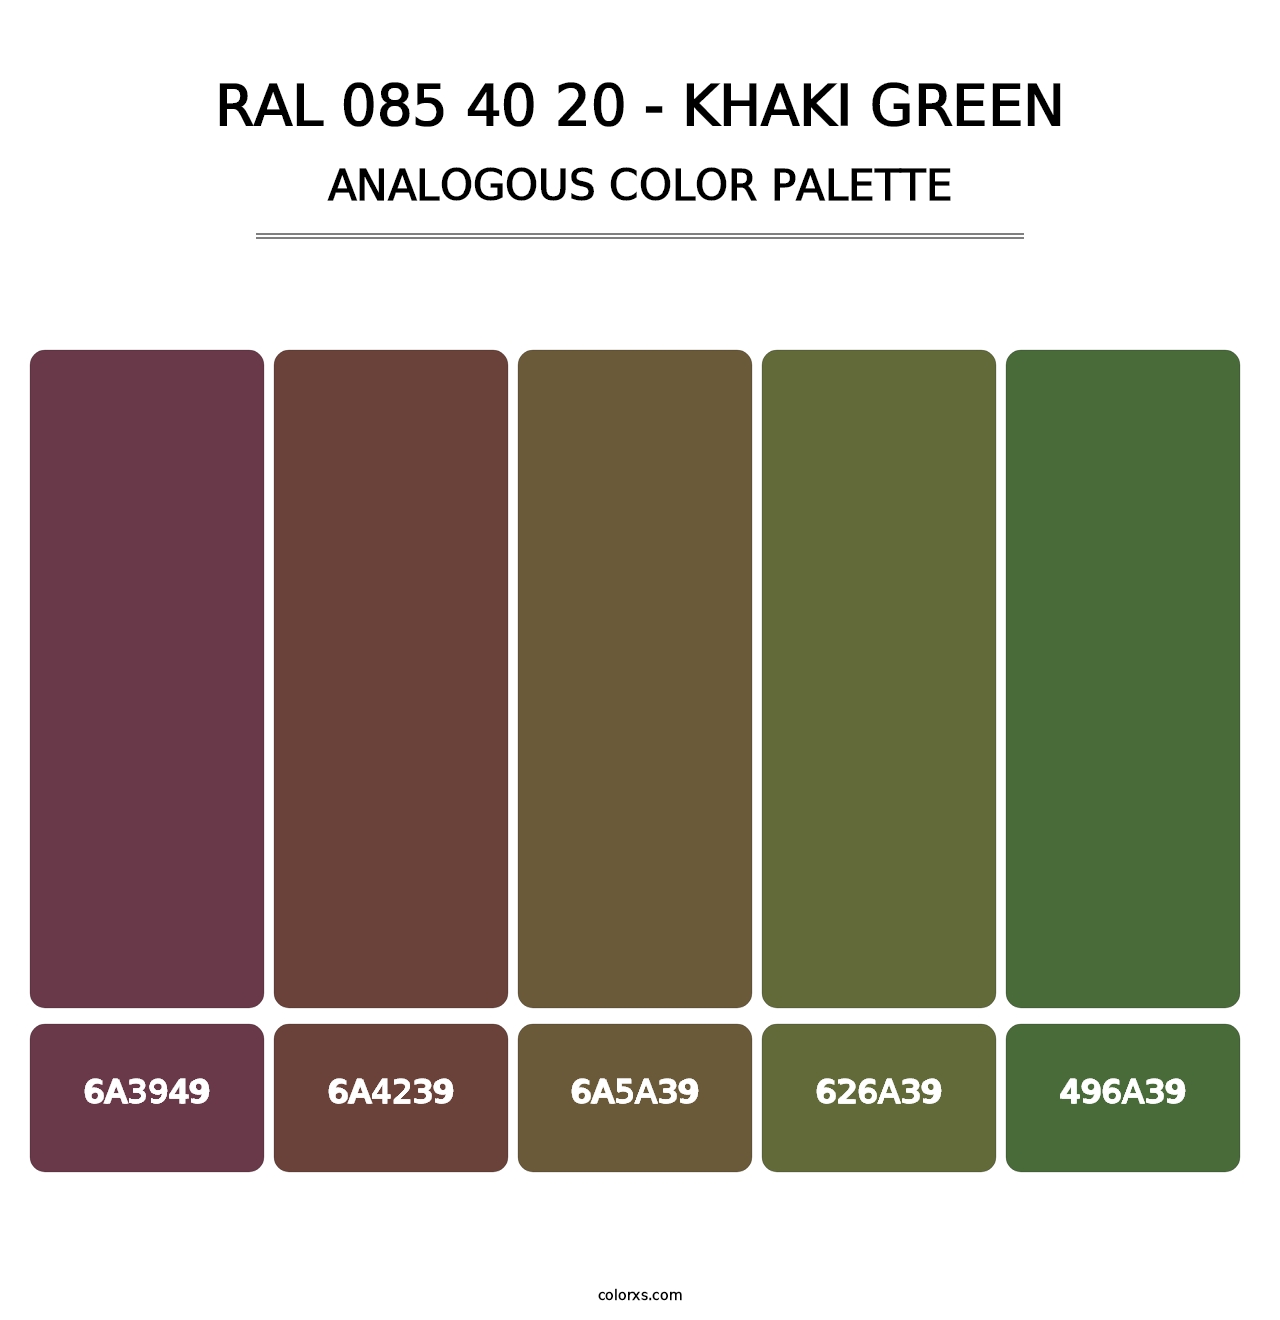 RAL 085 40 20 - Khaki Green - Analogous Color Palette